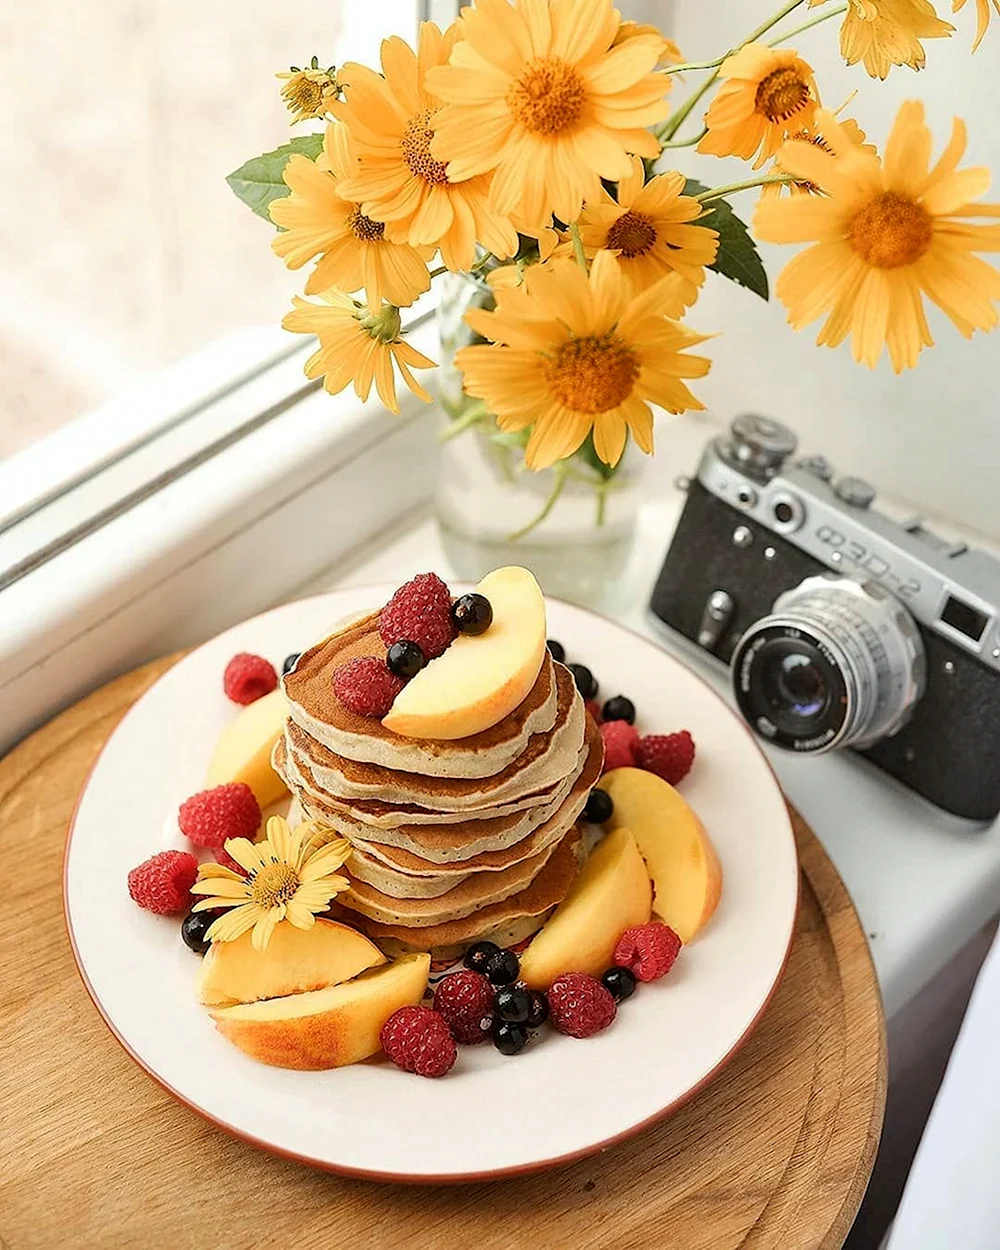 Завтрак и желтые цветы